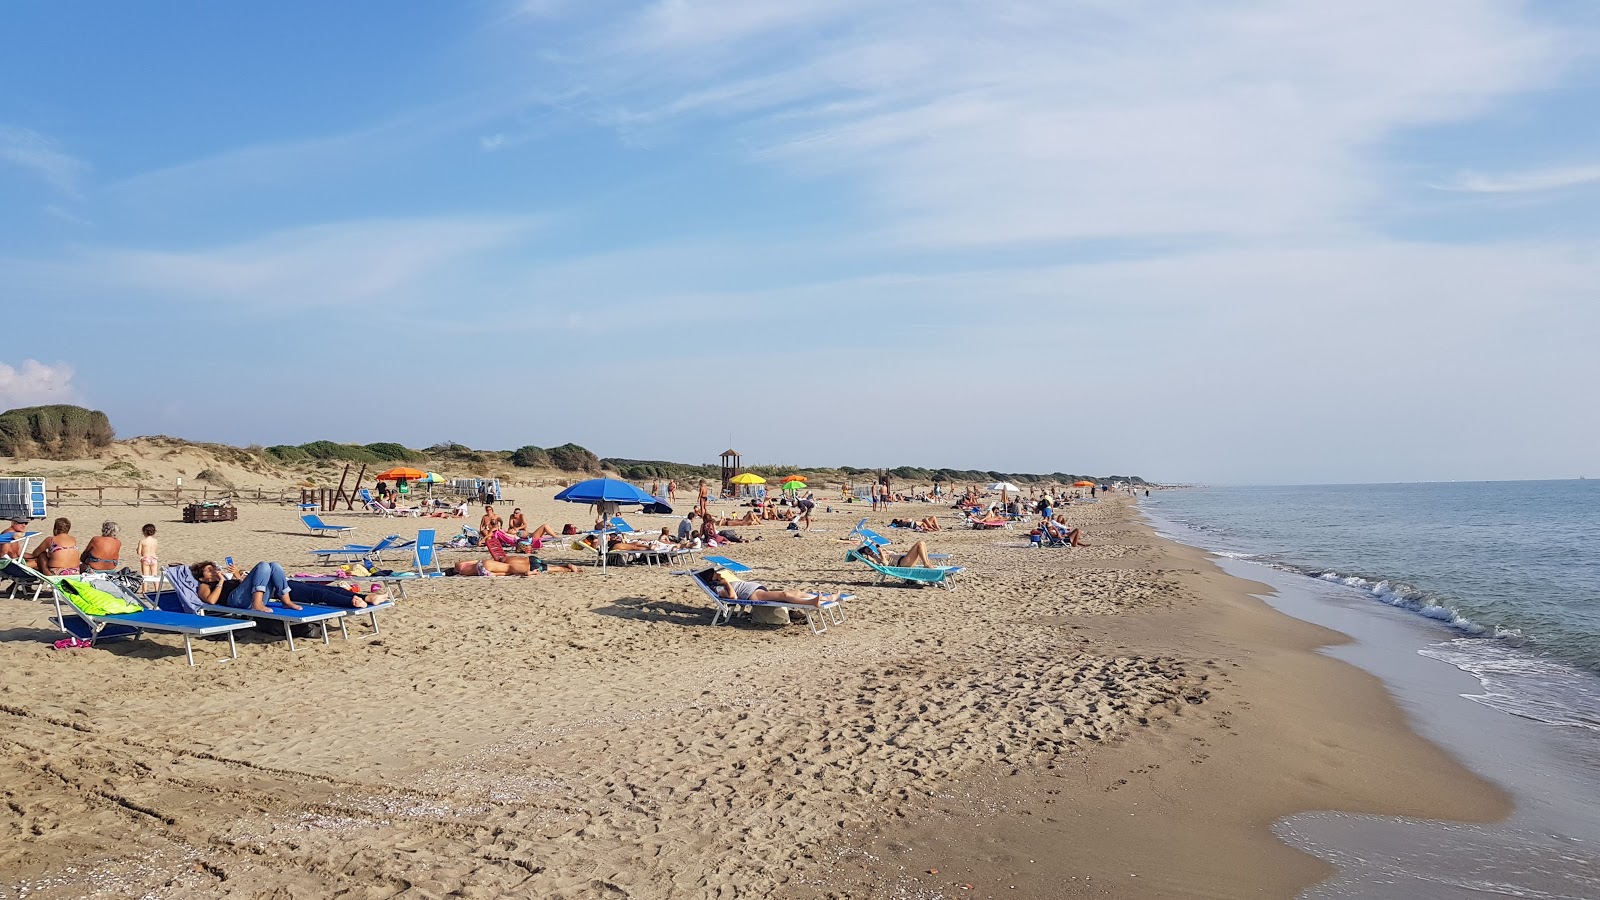 Capocotta Plajı'in fotoğrafı parlak kum yüzey ile